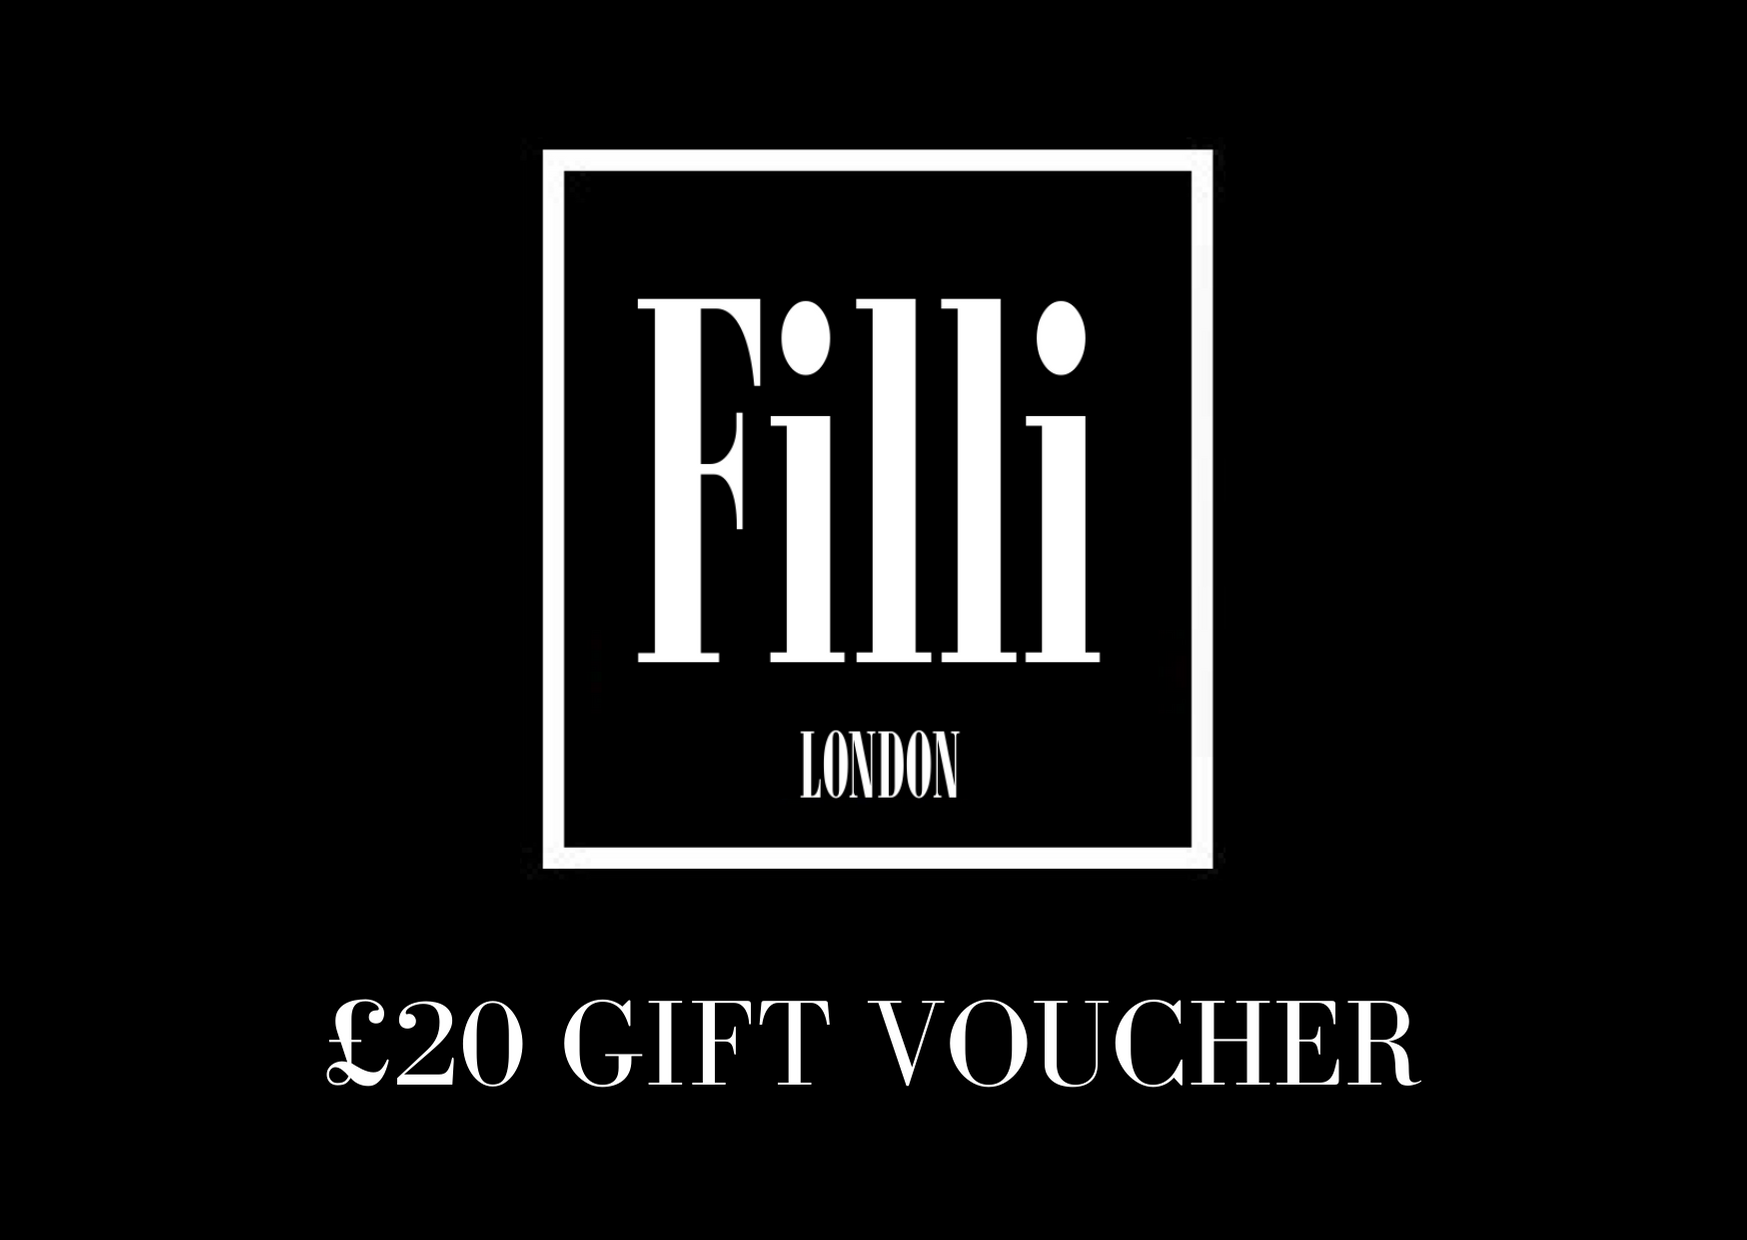 £20 Gift Voucher - Filli London